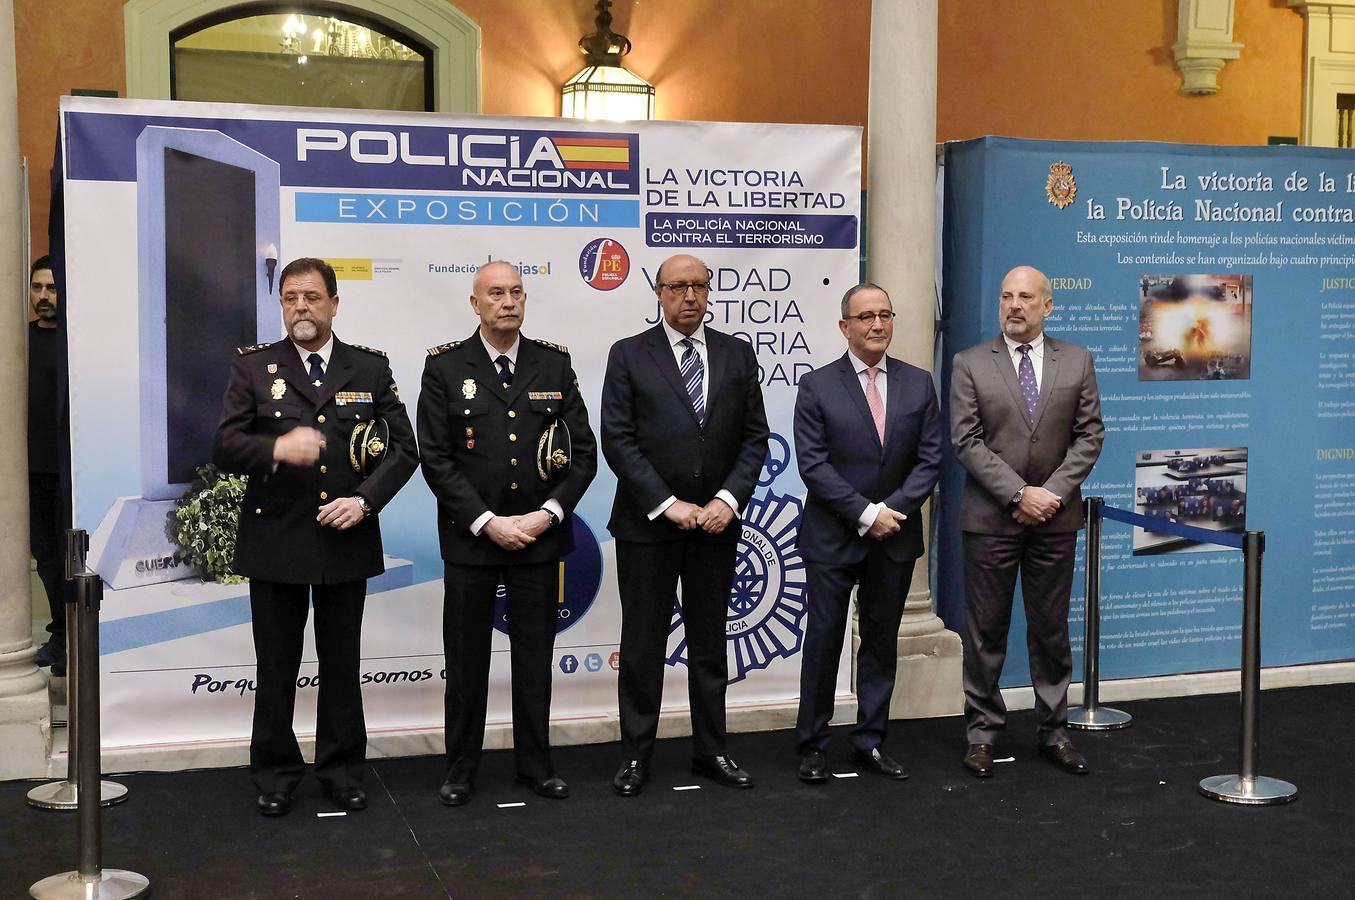 Llega a Sevilla la exposición que rinde homenaje a los 188 policías nacionales asesinados por terroristas